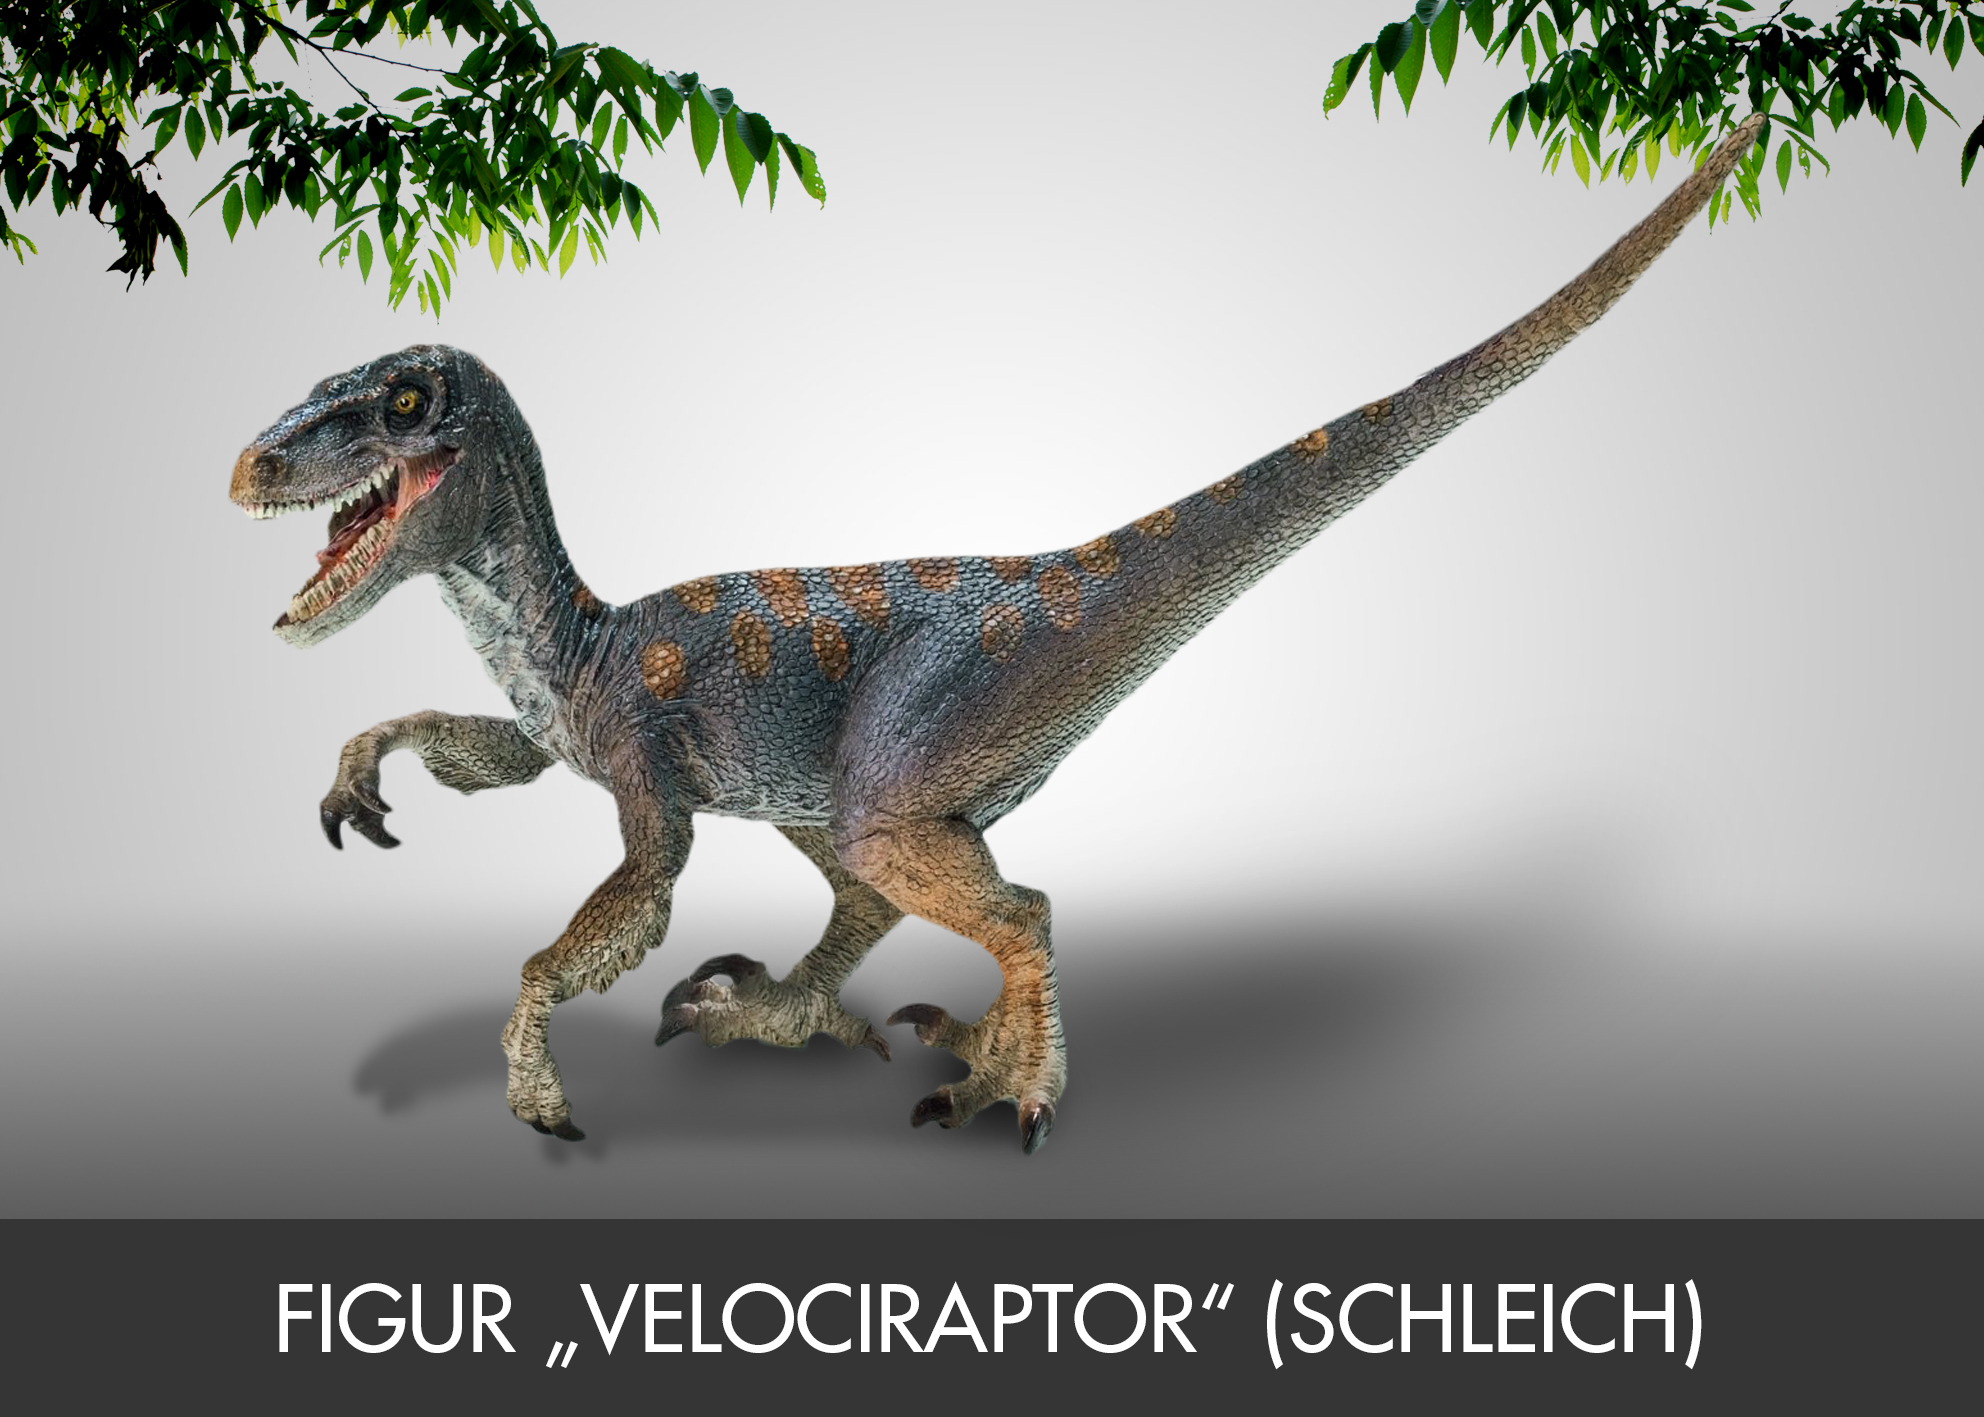 Figur „Velociraptor“ (Schleich) | raptor publishing